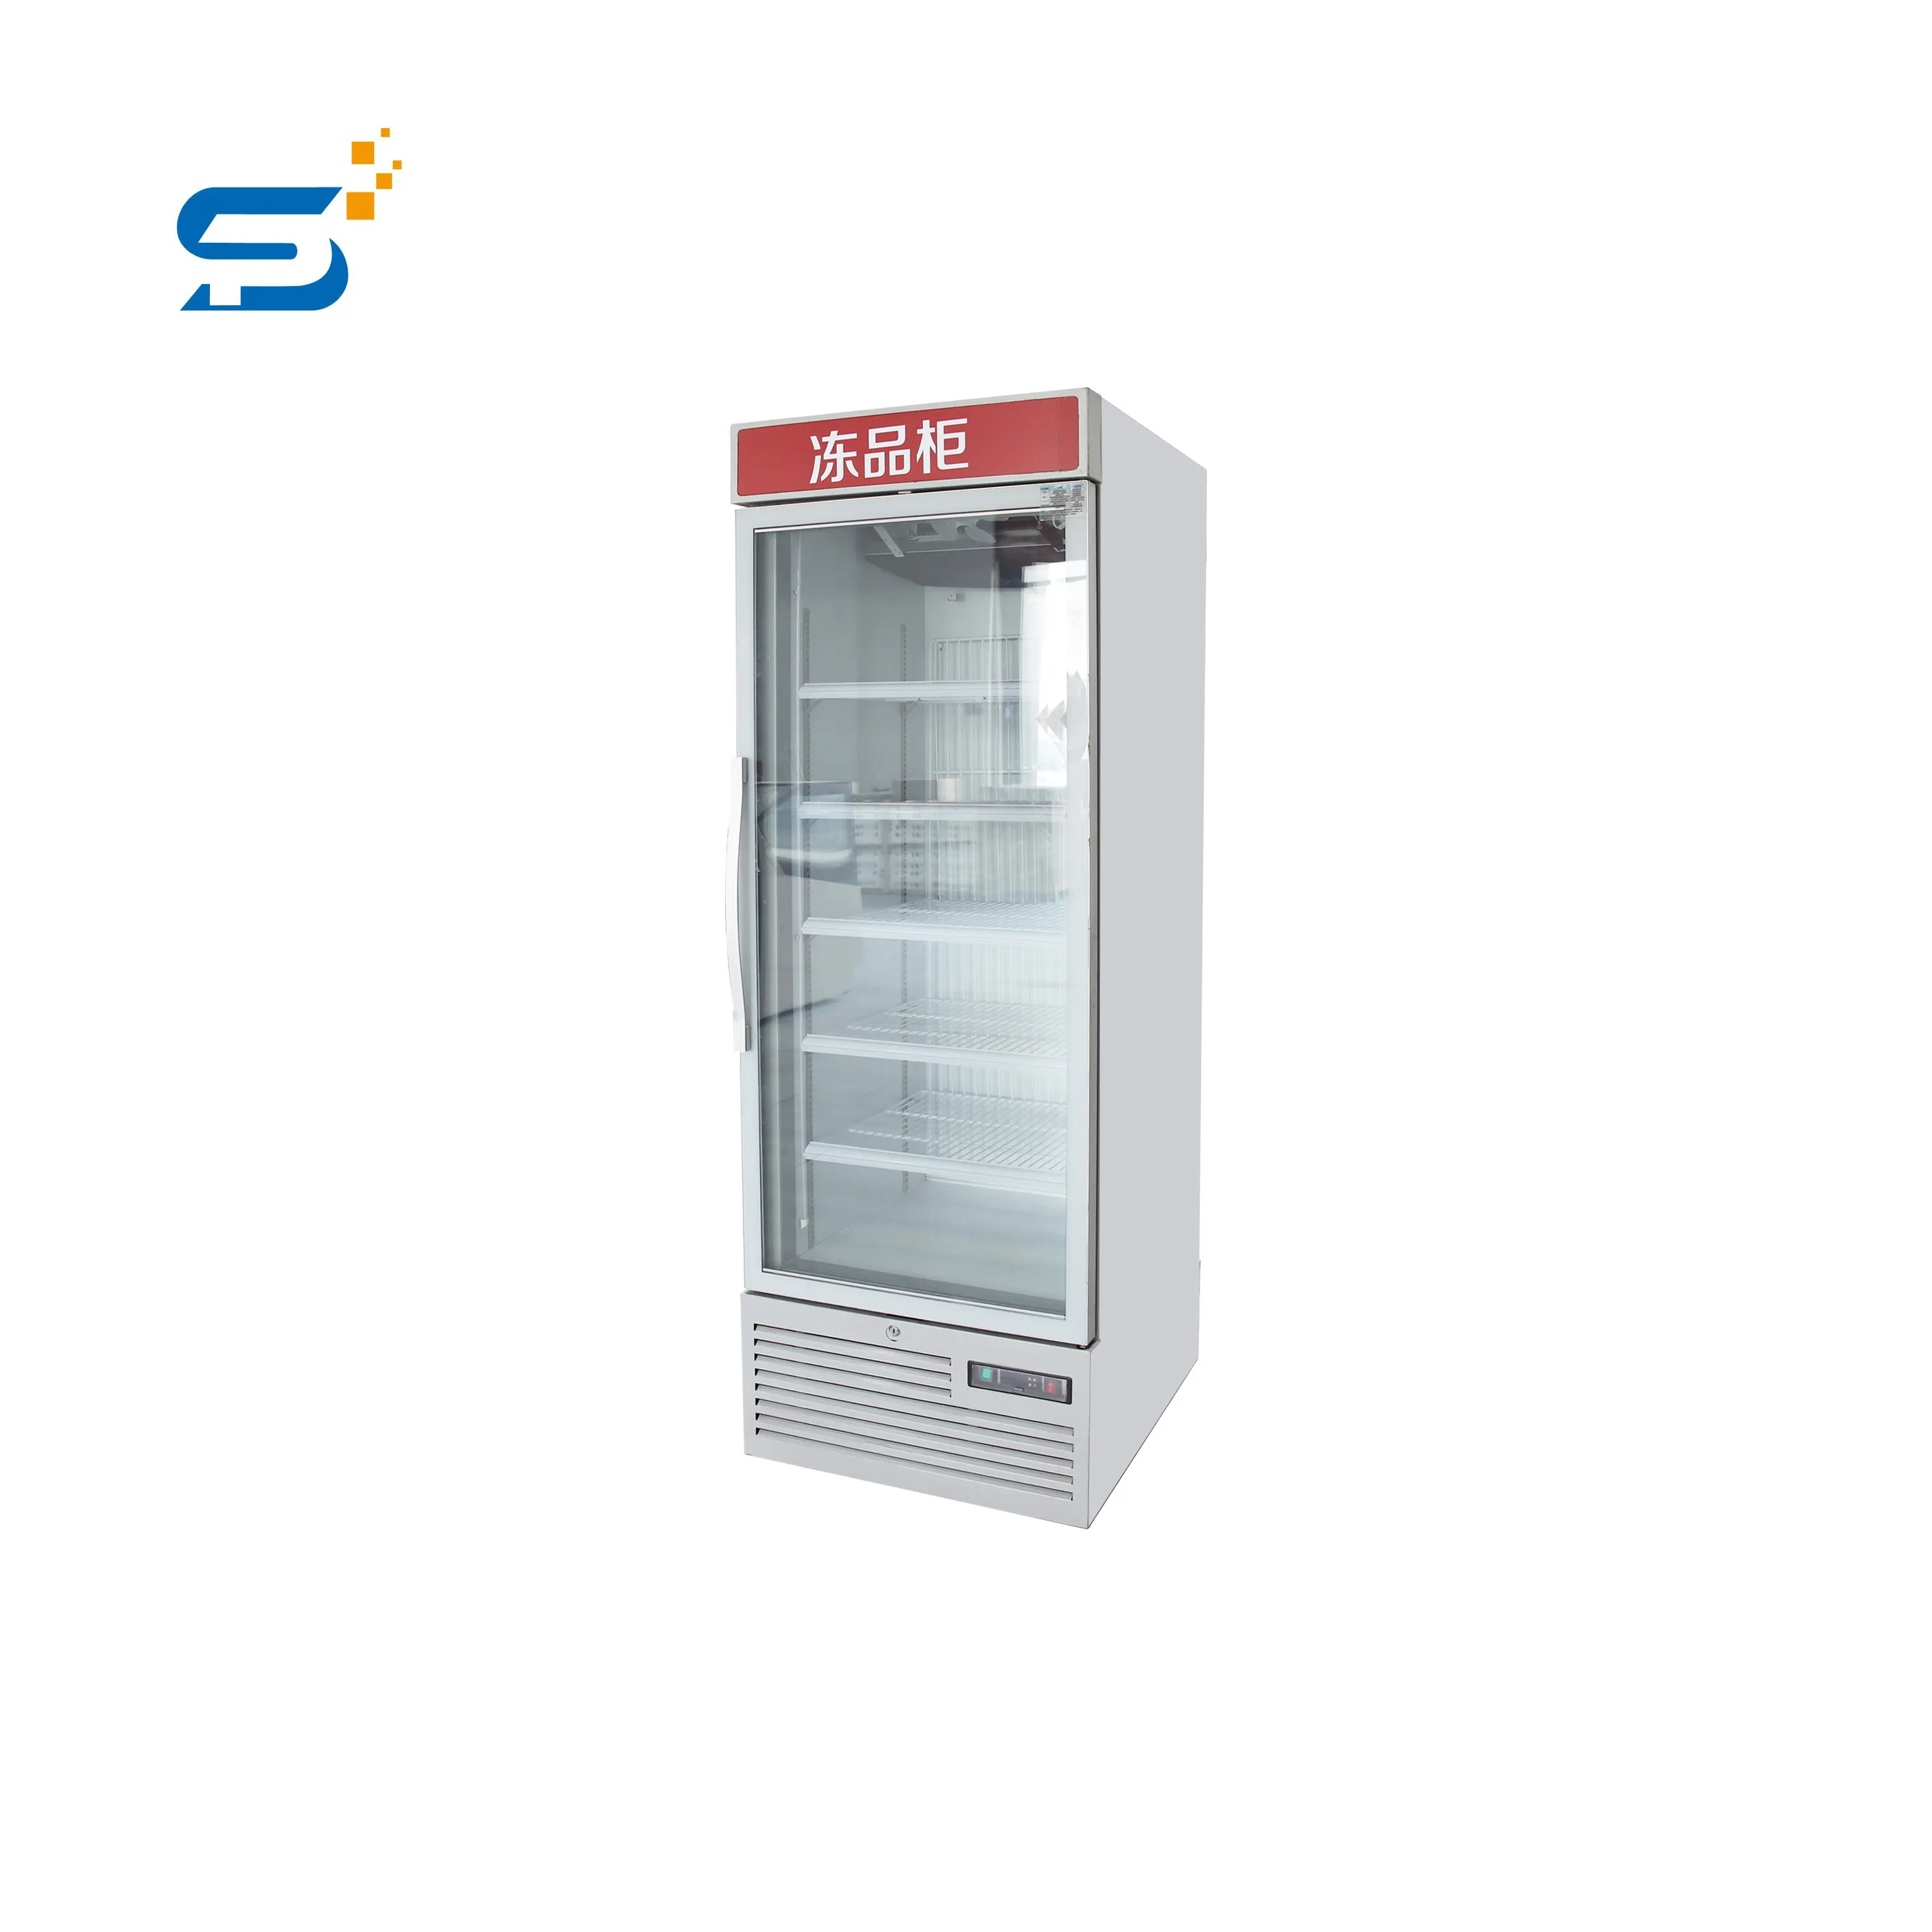 Prometheus glass door for frozen food freezer showcase supermarket display freezer